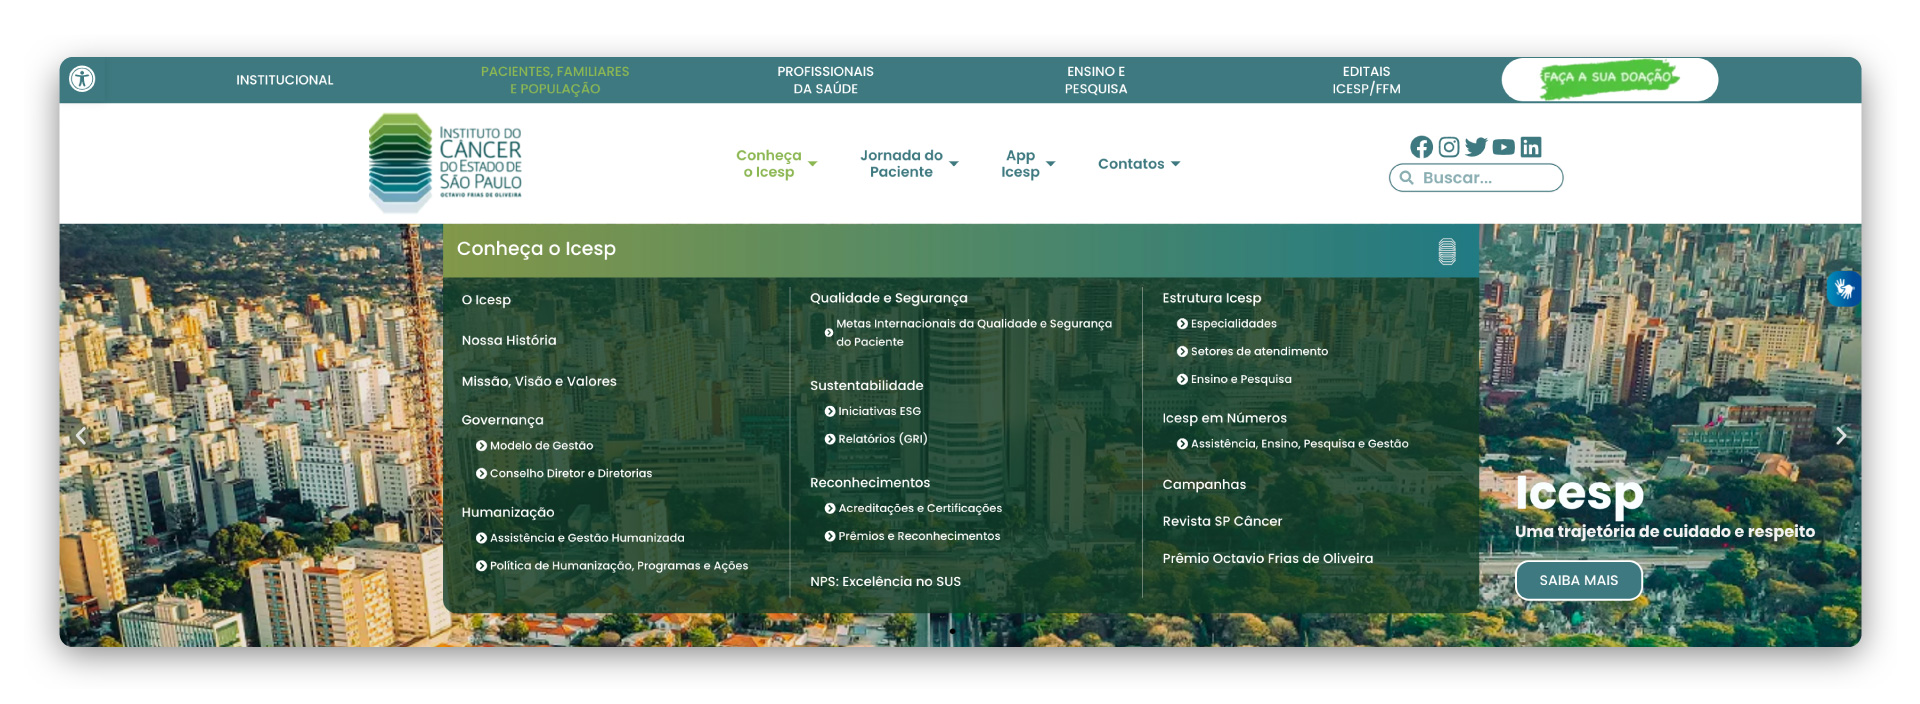 Detalhe da home page do site do Instituto do Câncer do Estado de São Paulo